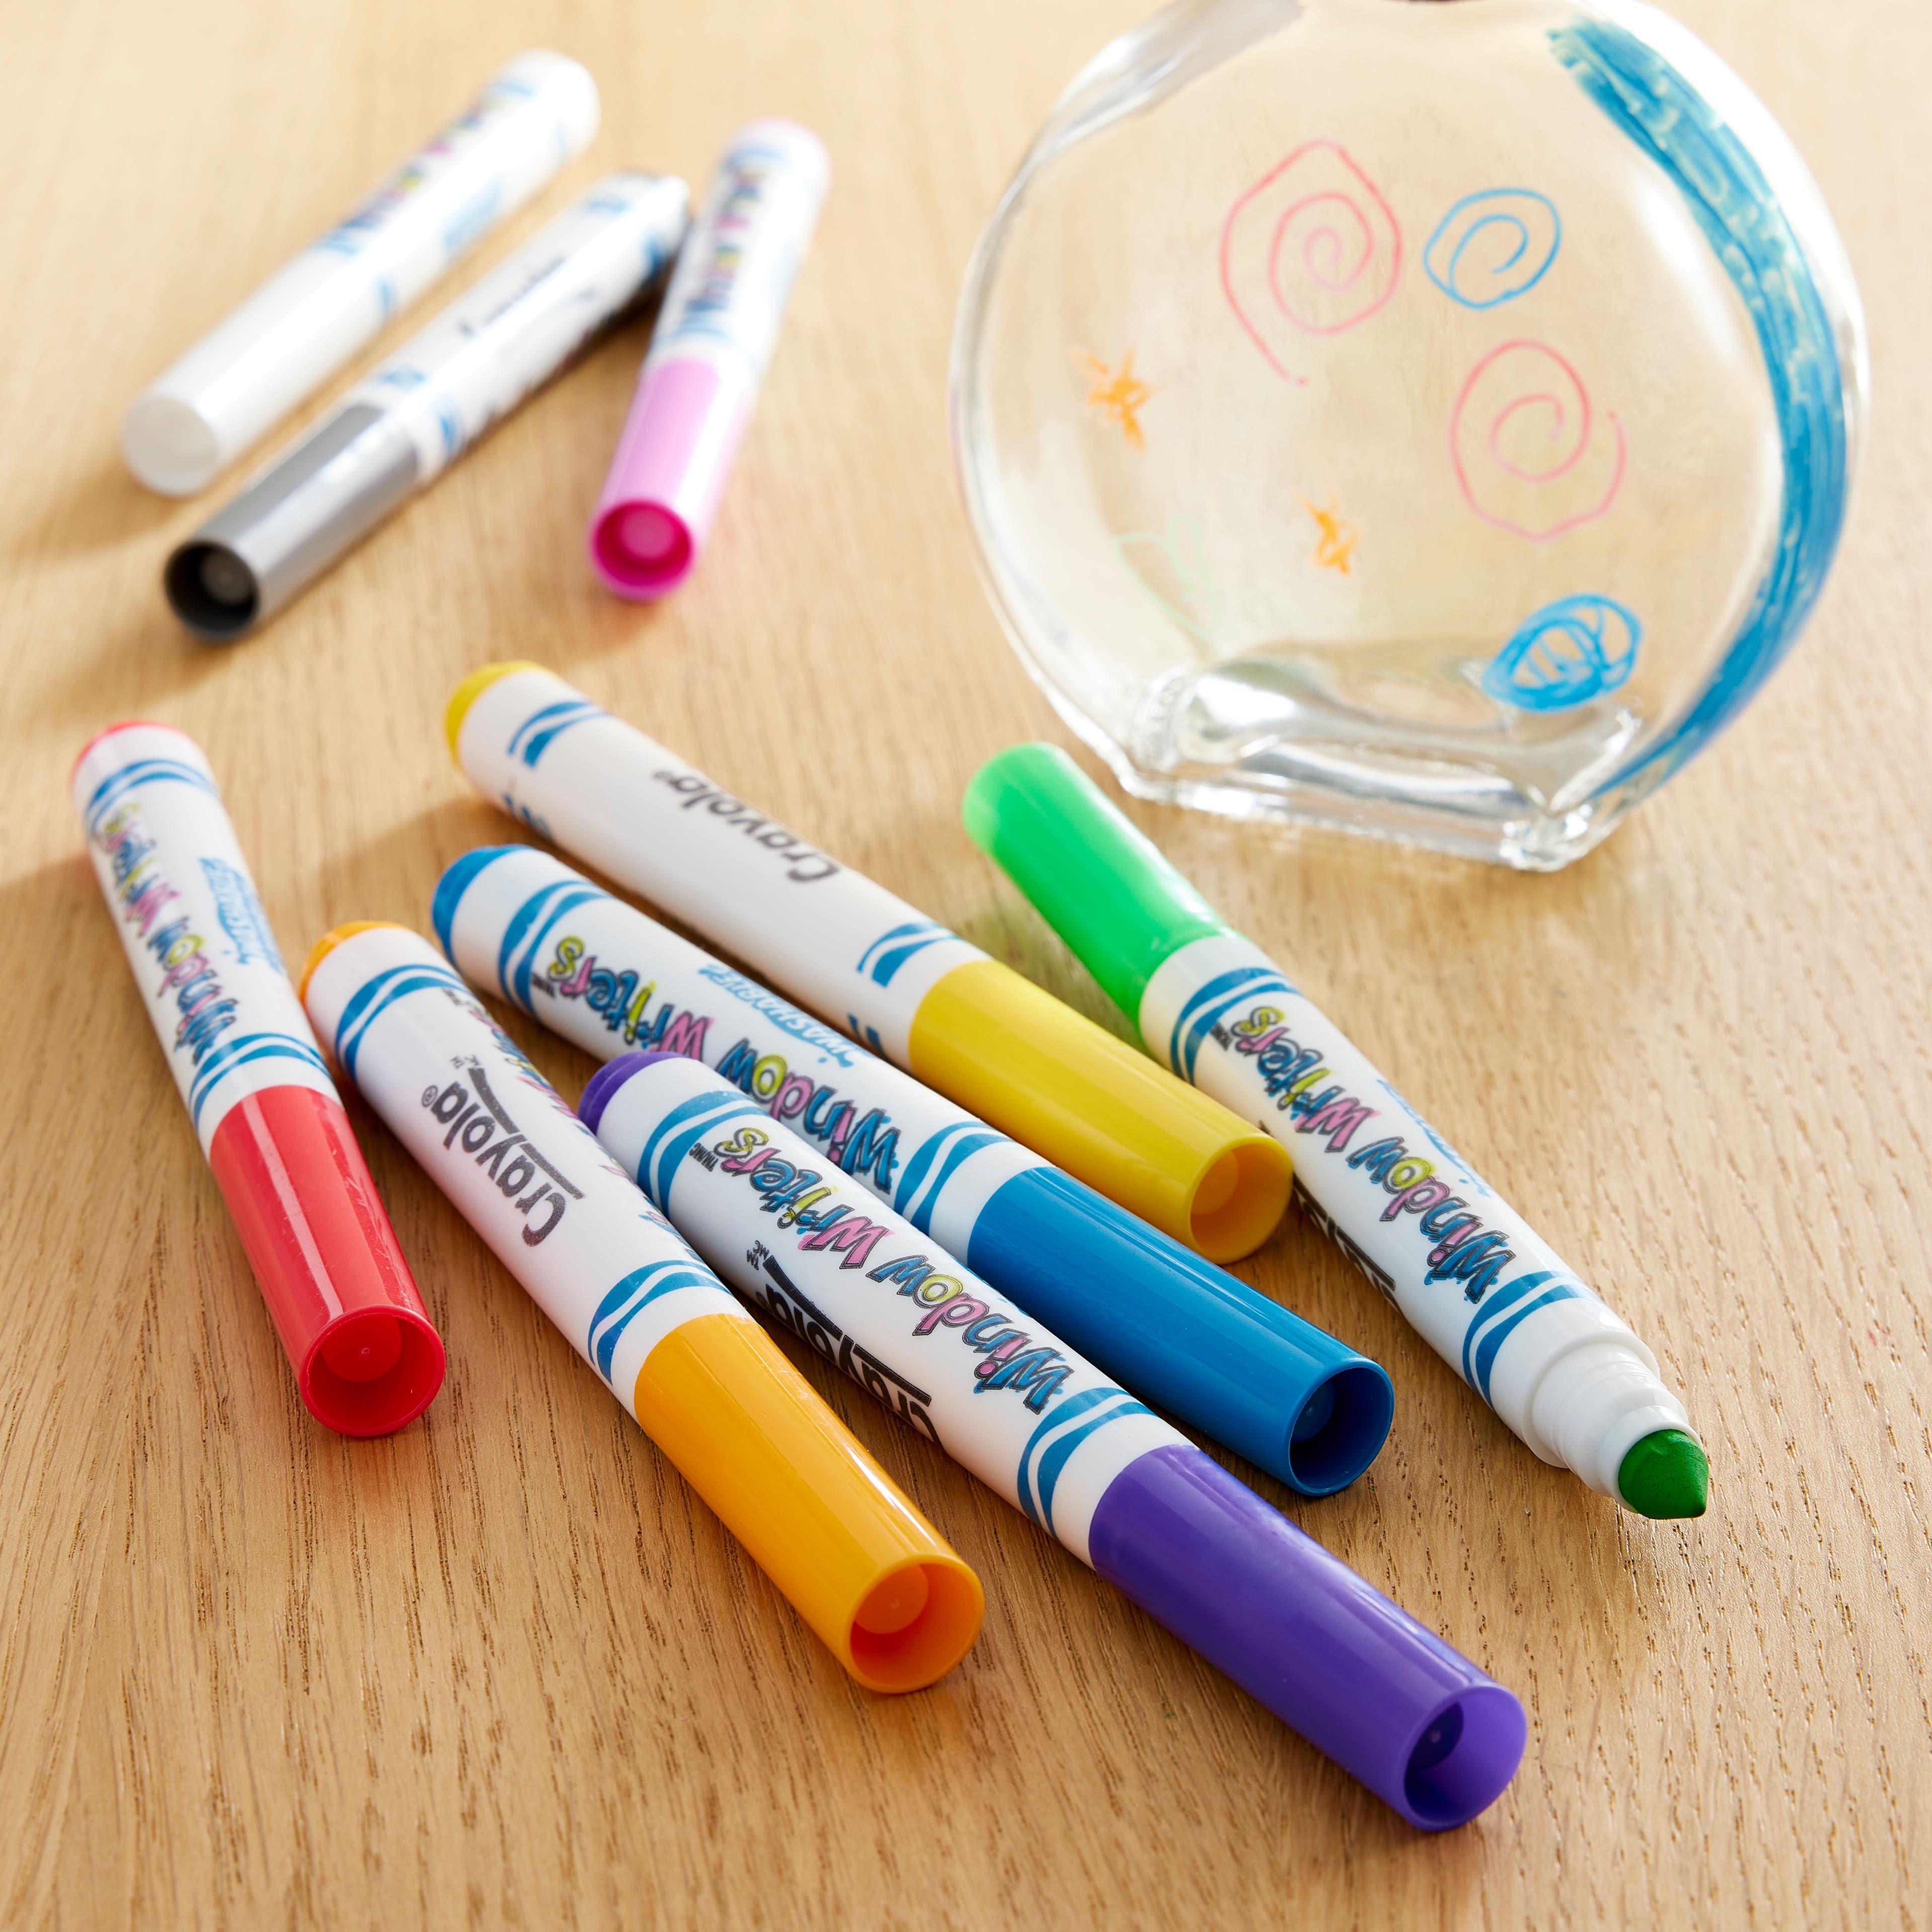 Crayola® Washable Paint Brush Pens, Michaels